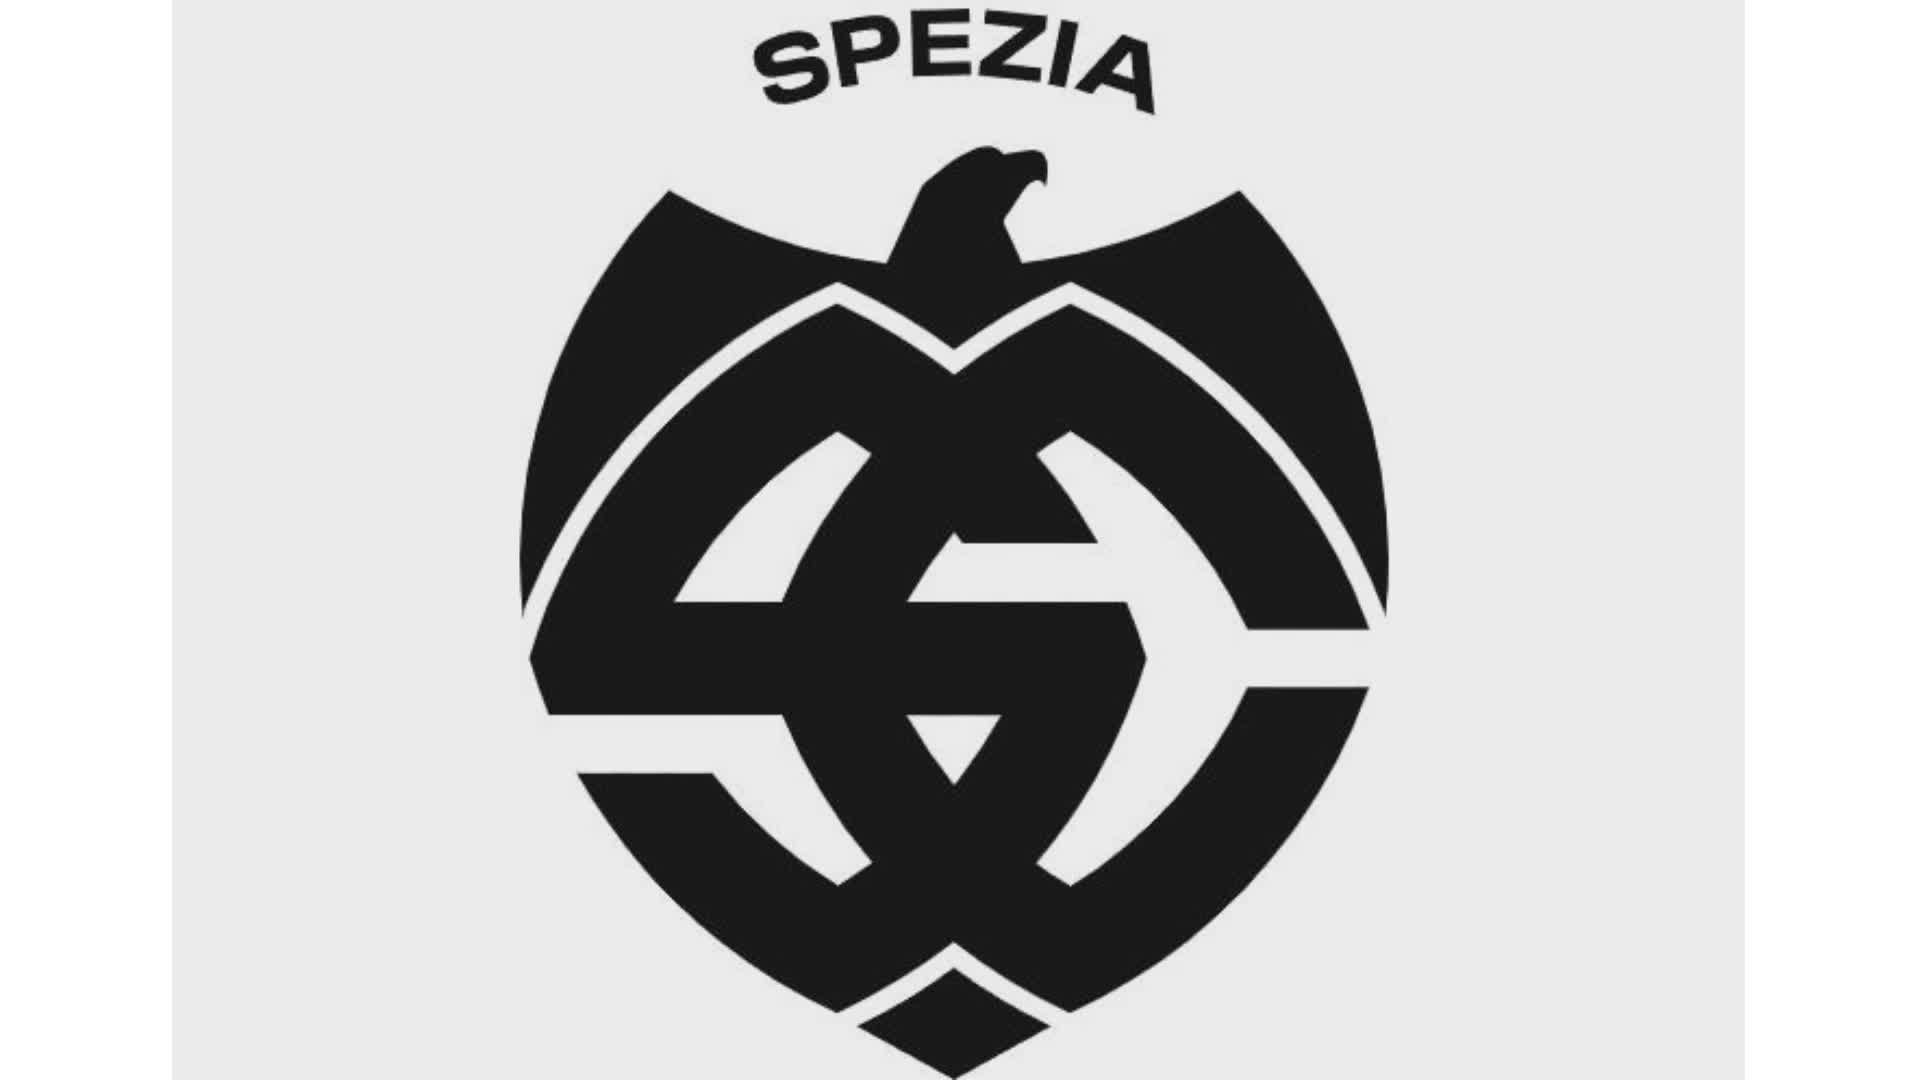 Spezia Calcio: sondaggio per cambiare il simbolo sgradito a molti tifosi, "Ricorda il nazismo"